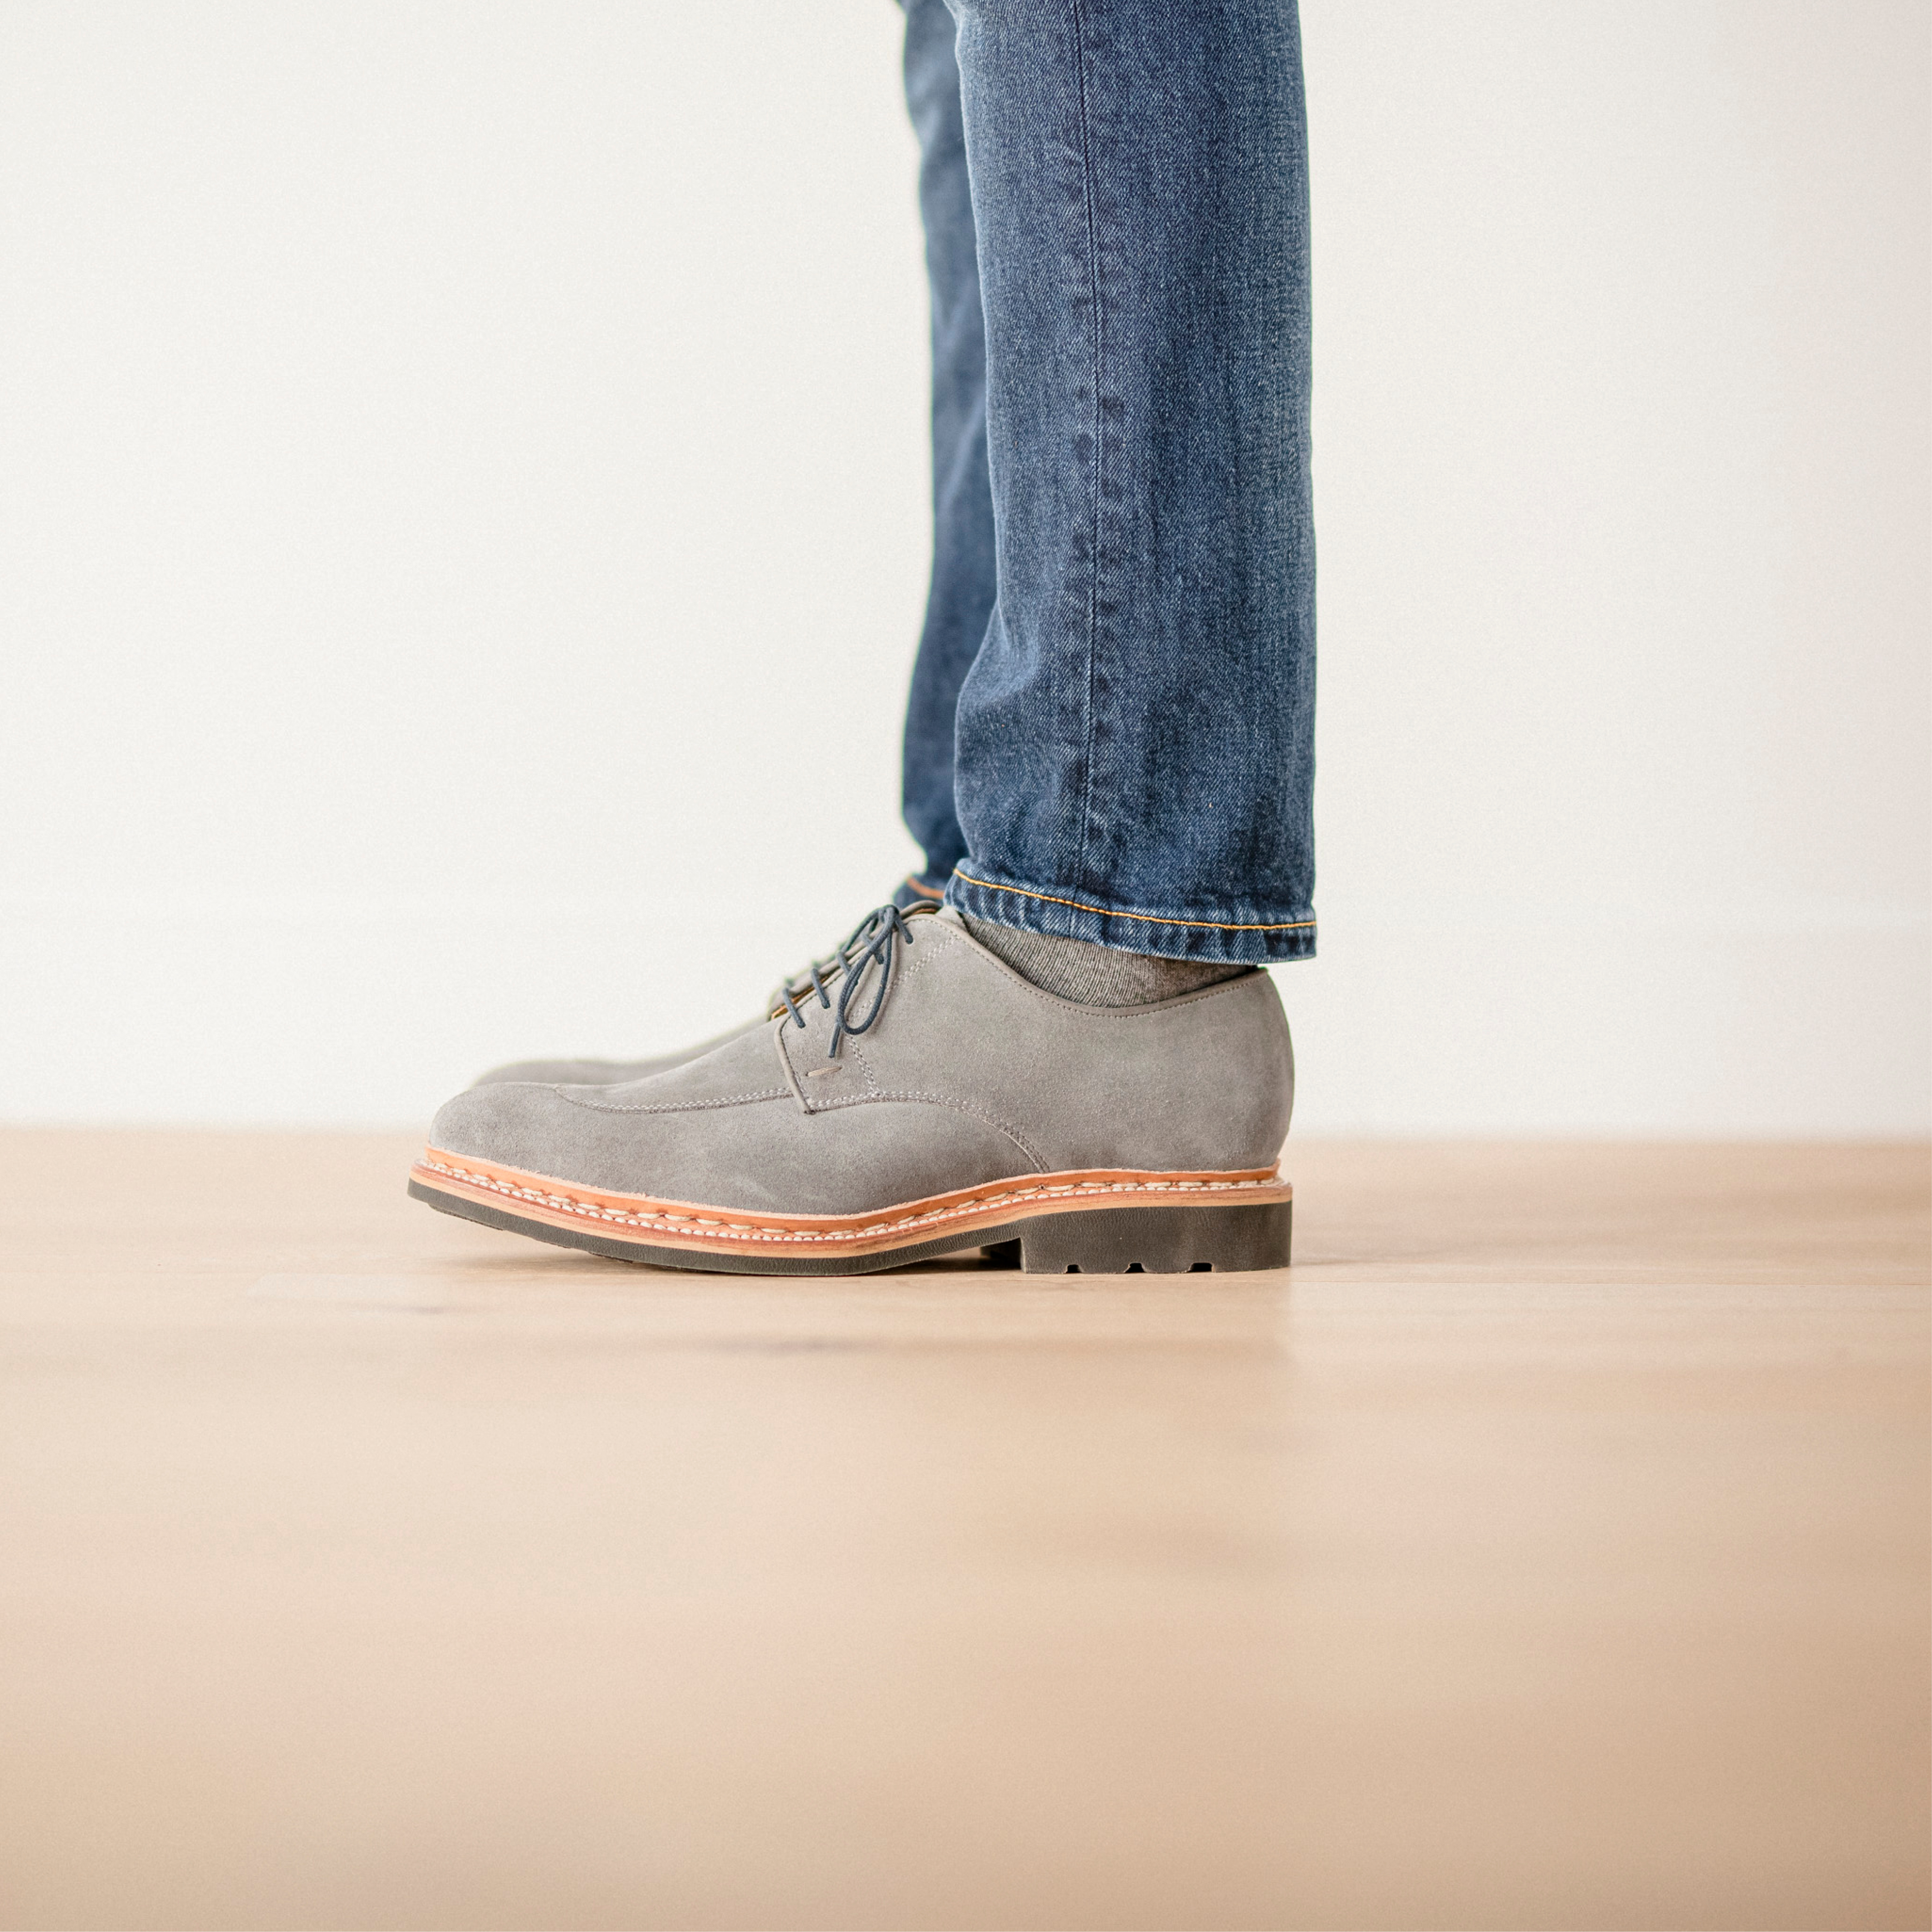 Hardrige, Journal - Conseils, L'entretien de vos chaussures Maison Hardrige